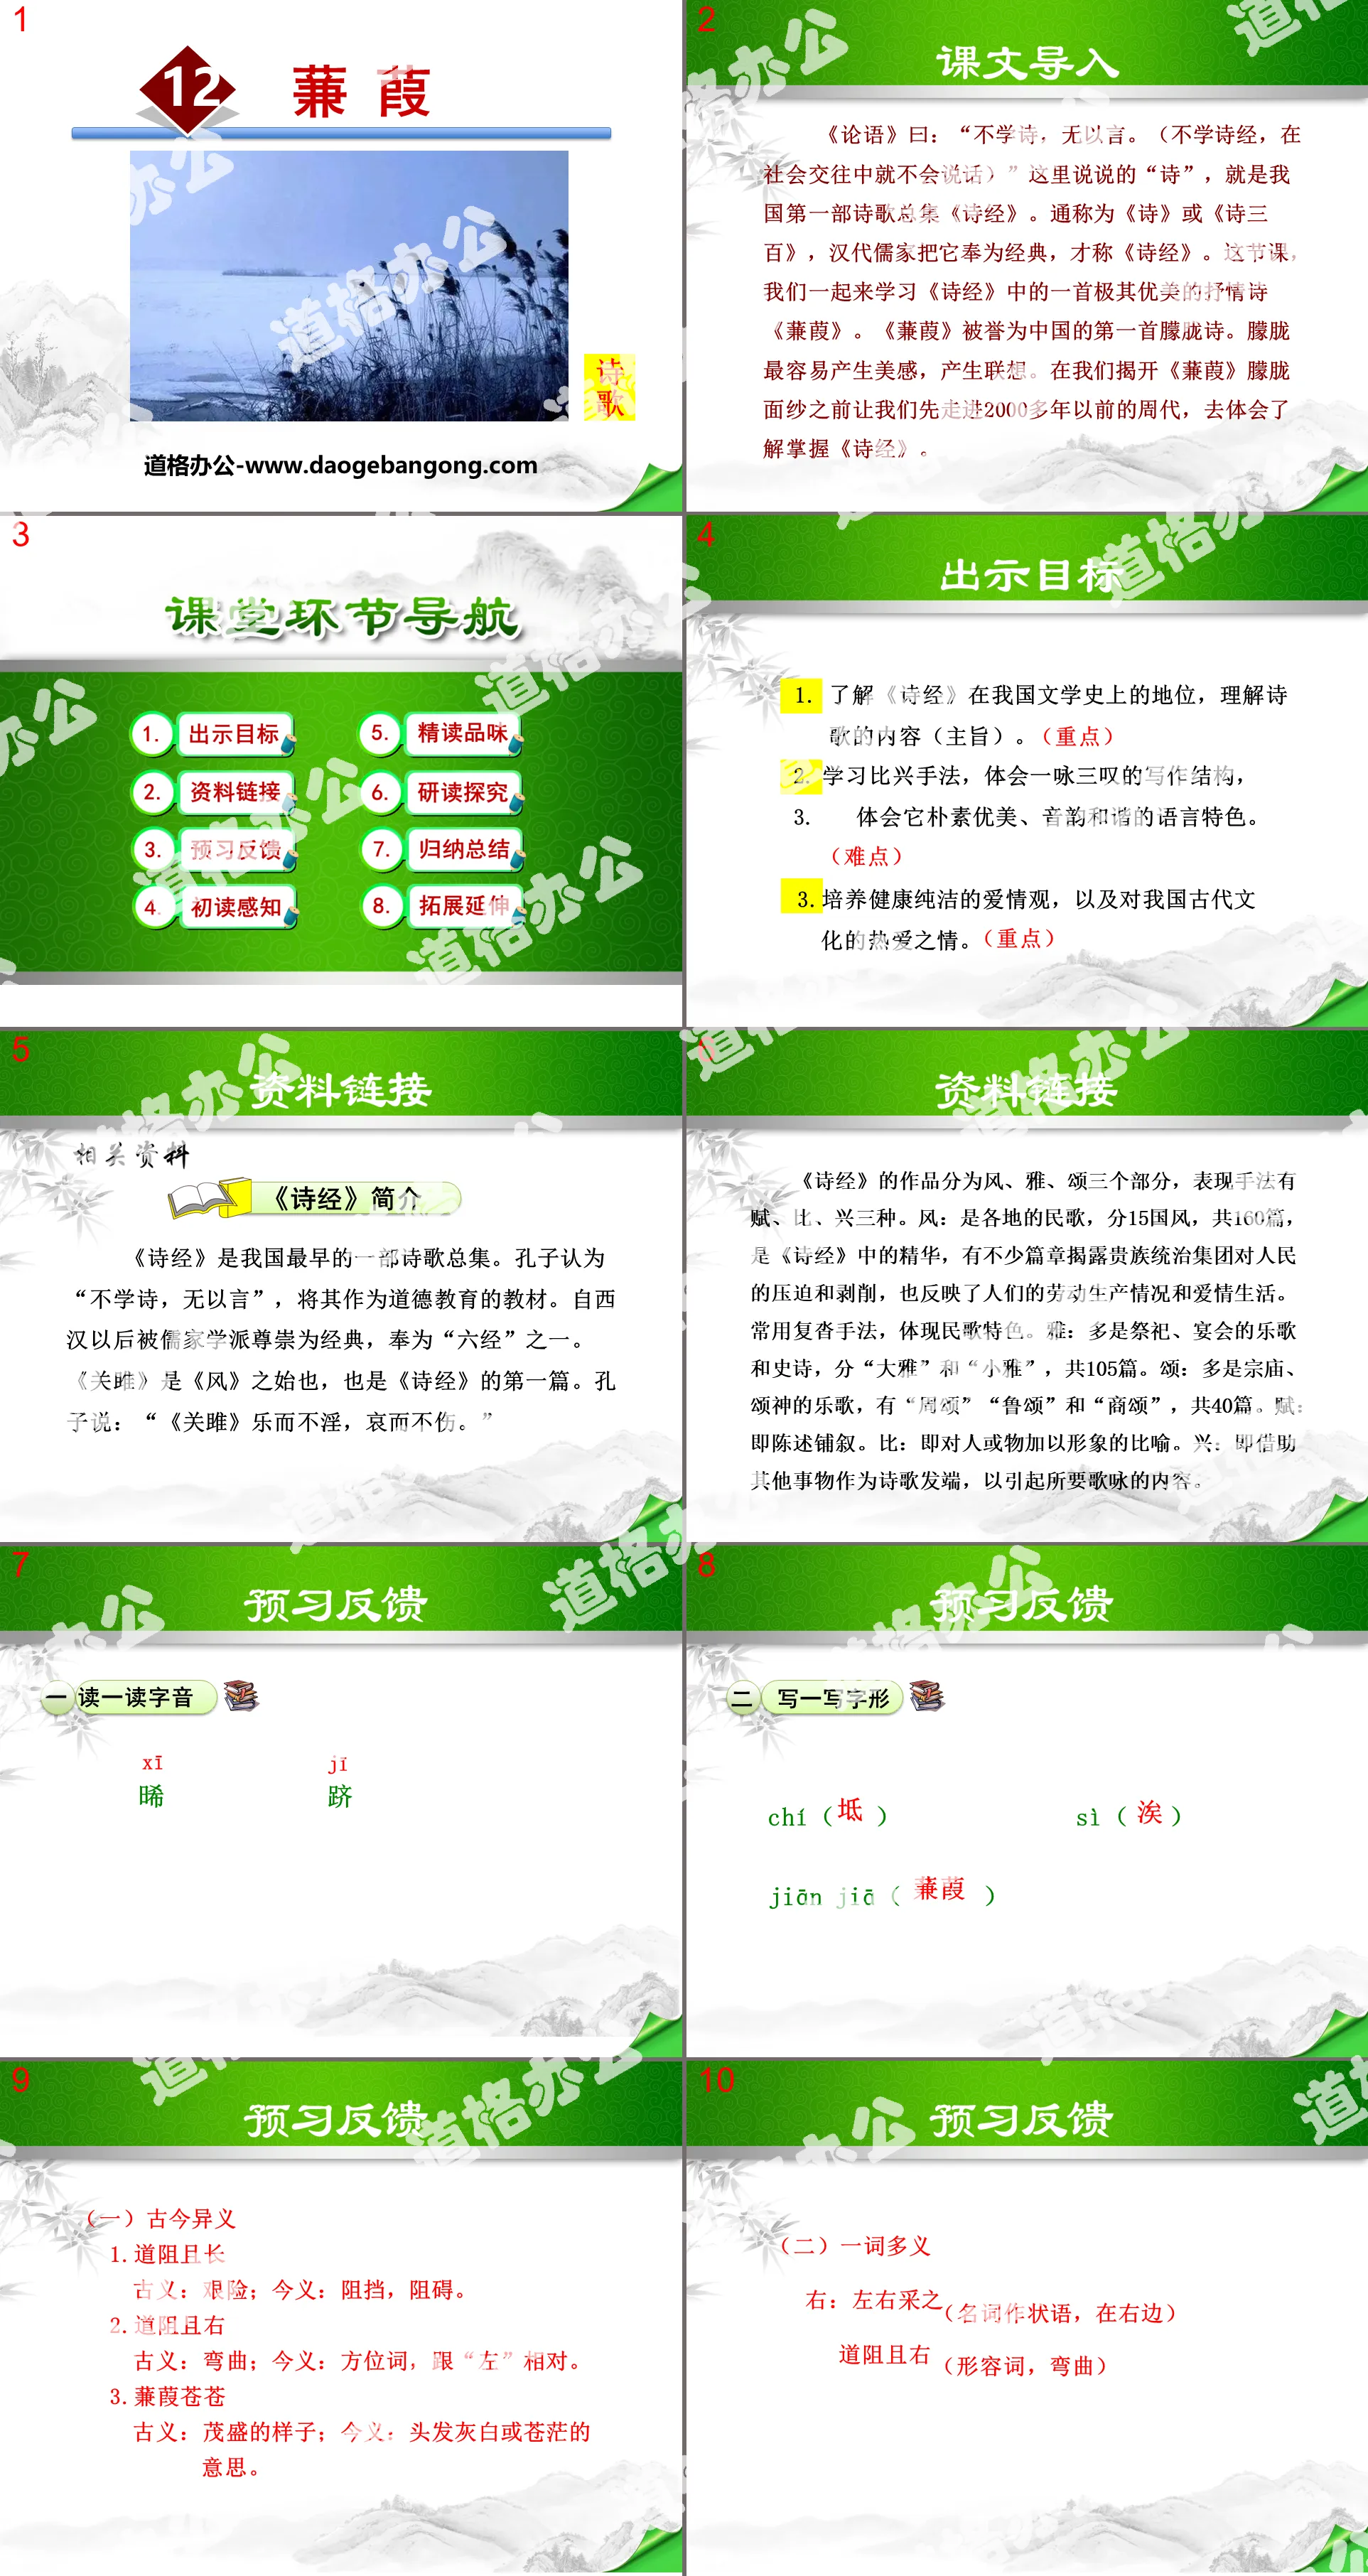 "Jianjia" PPT download